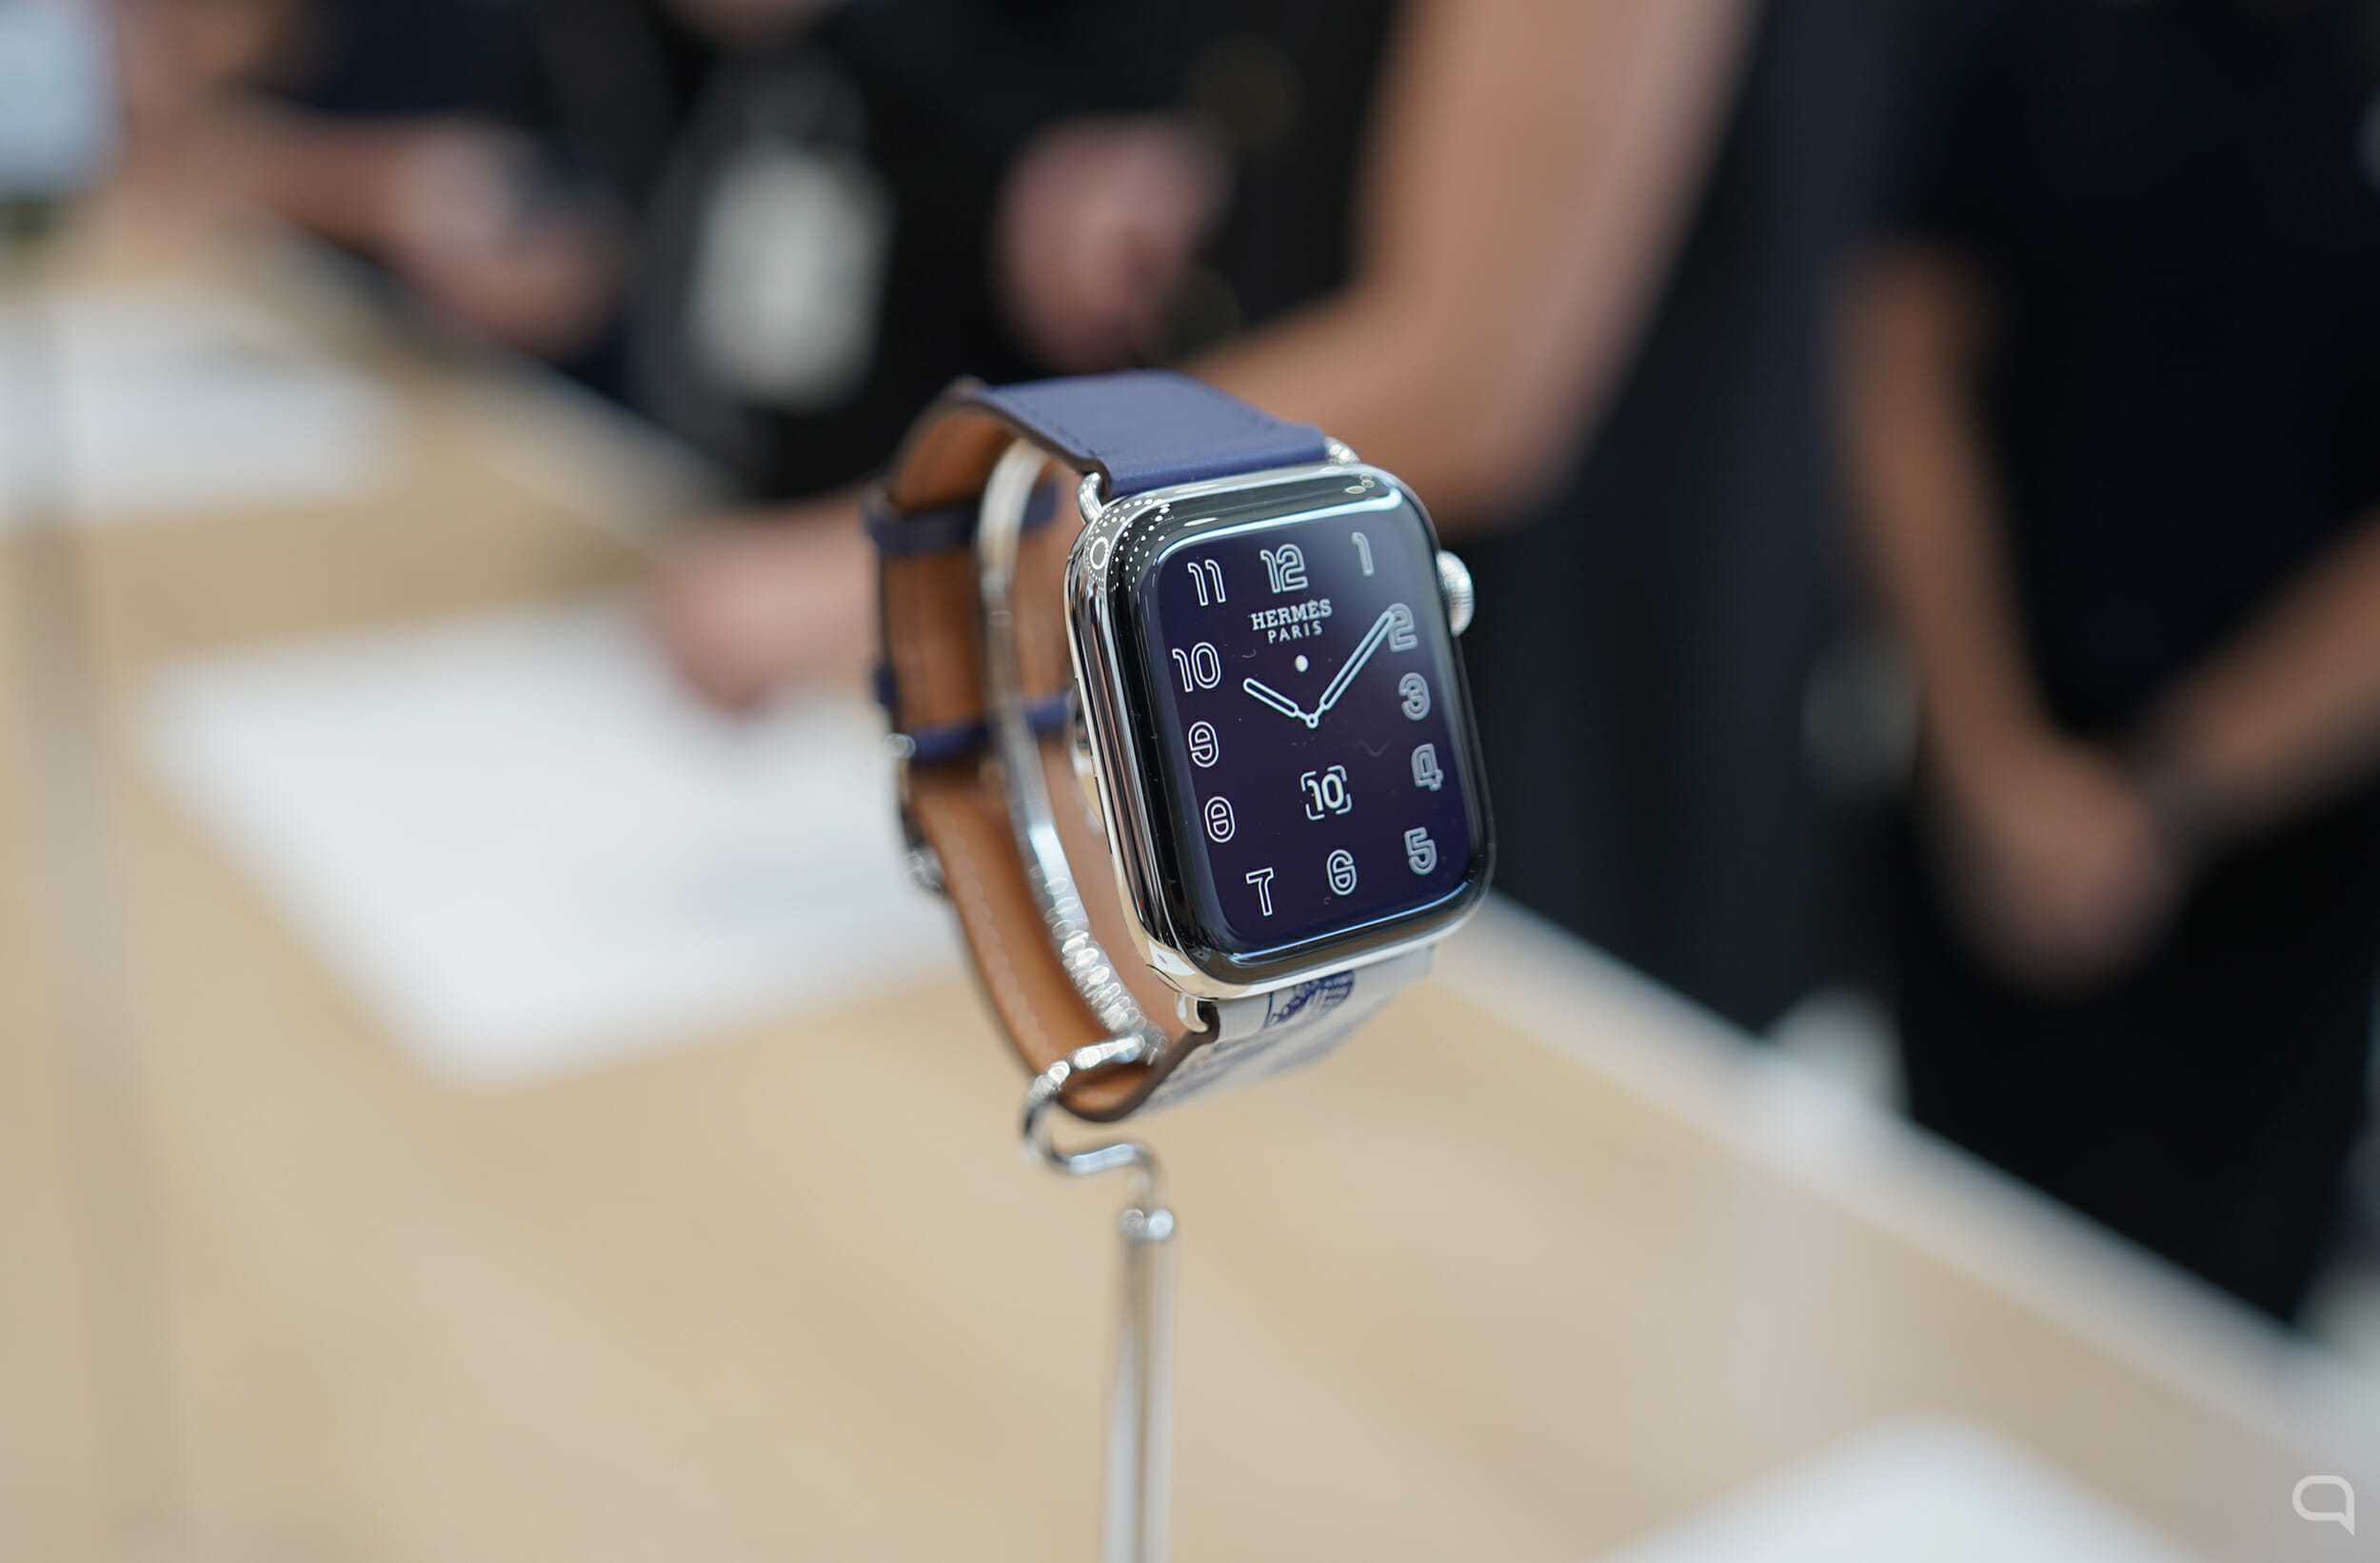 Новые смарт-часы Meizu предлагают 8 ГБ памяти, процессор Snapdragon и стильный дизайн Вот только где-то мы это уже видели Да и цена какая-то знакомая Если вам нравятся Apple Watch, вы оцените новинку